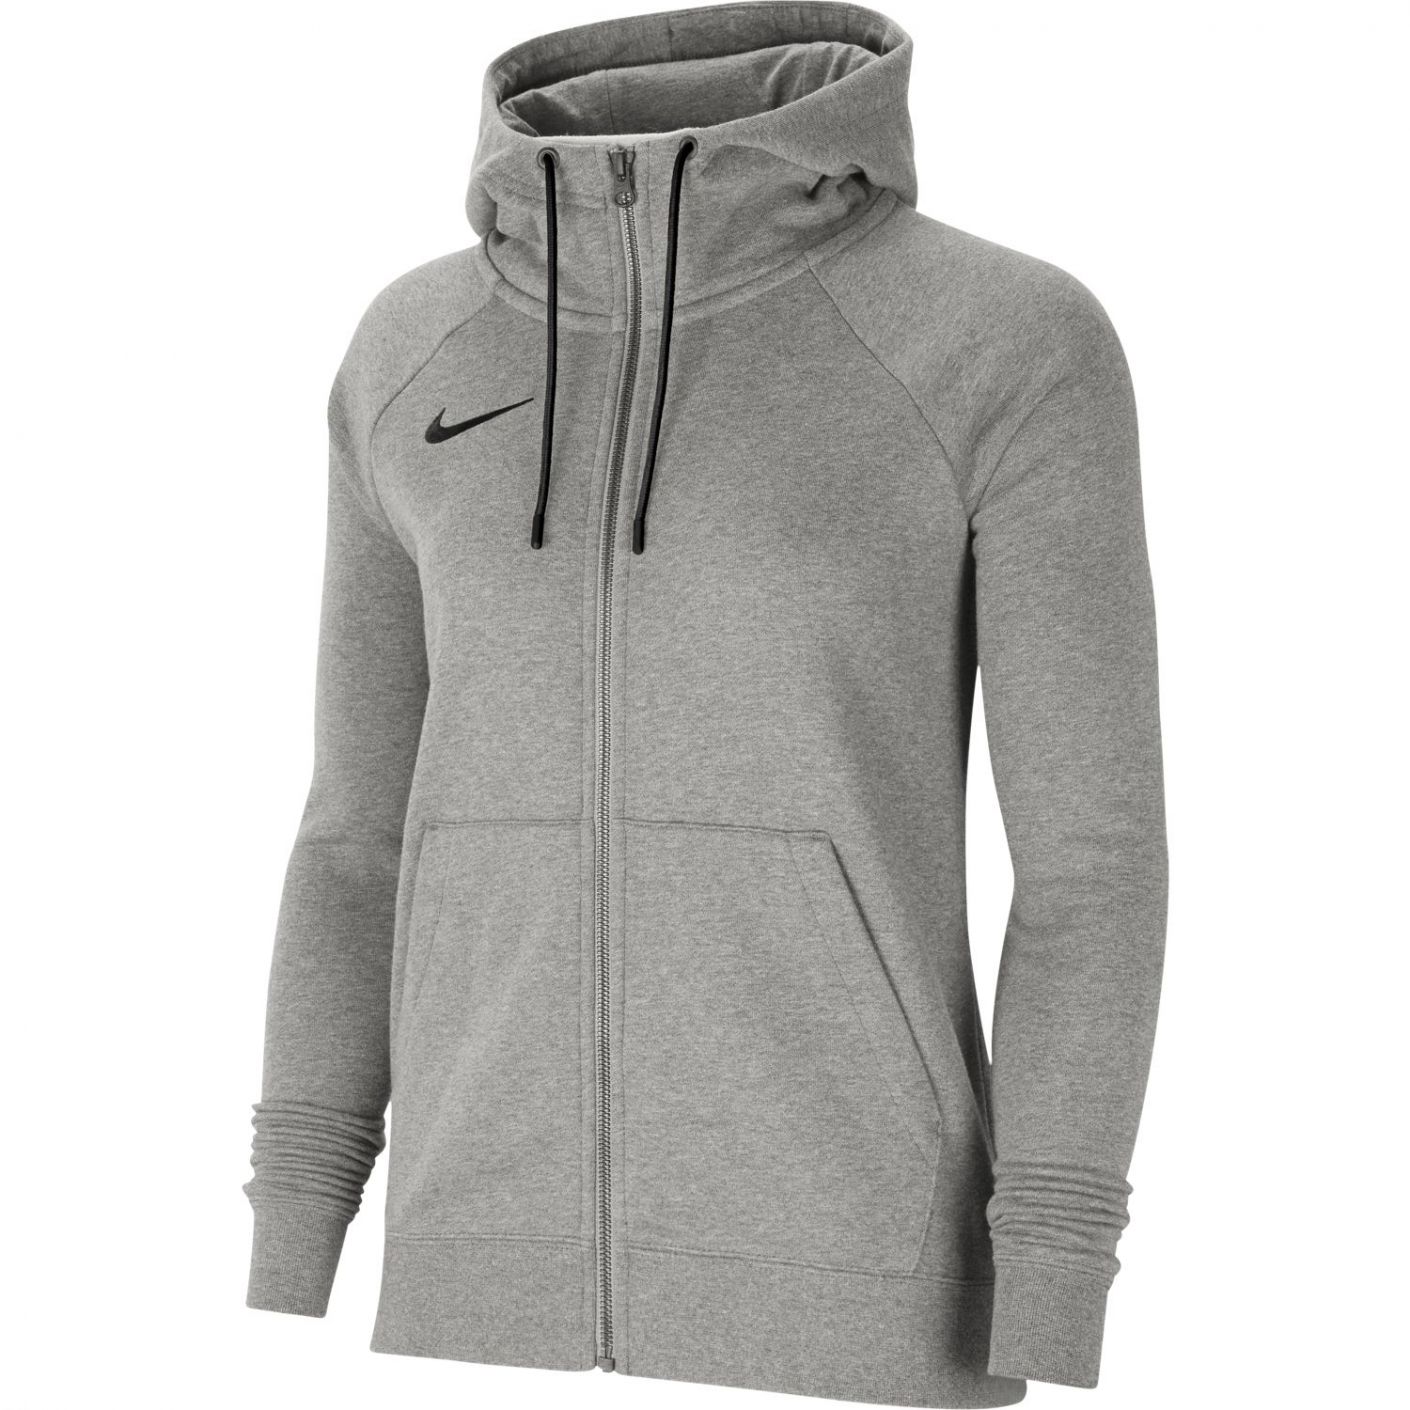 Nike - Sweatshirt wmn team flc hoodie #063 CW6955